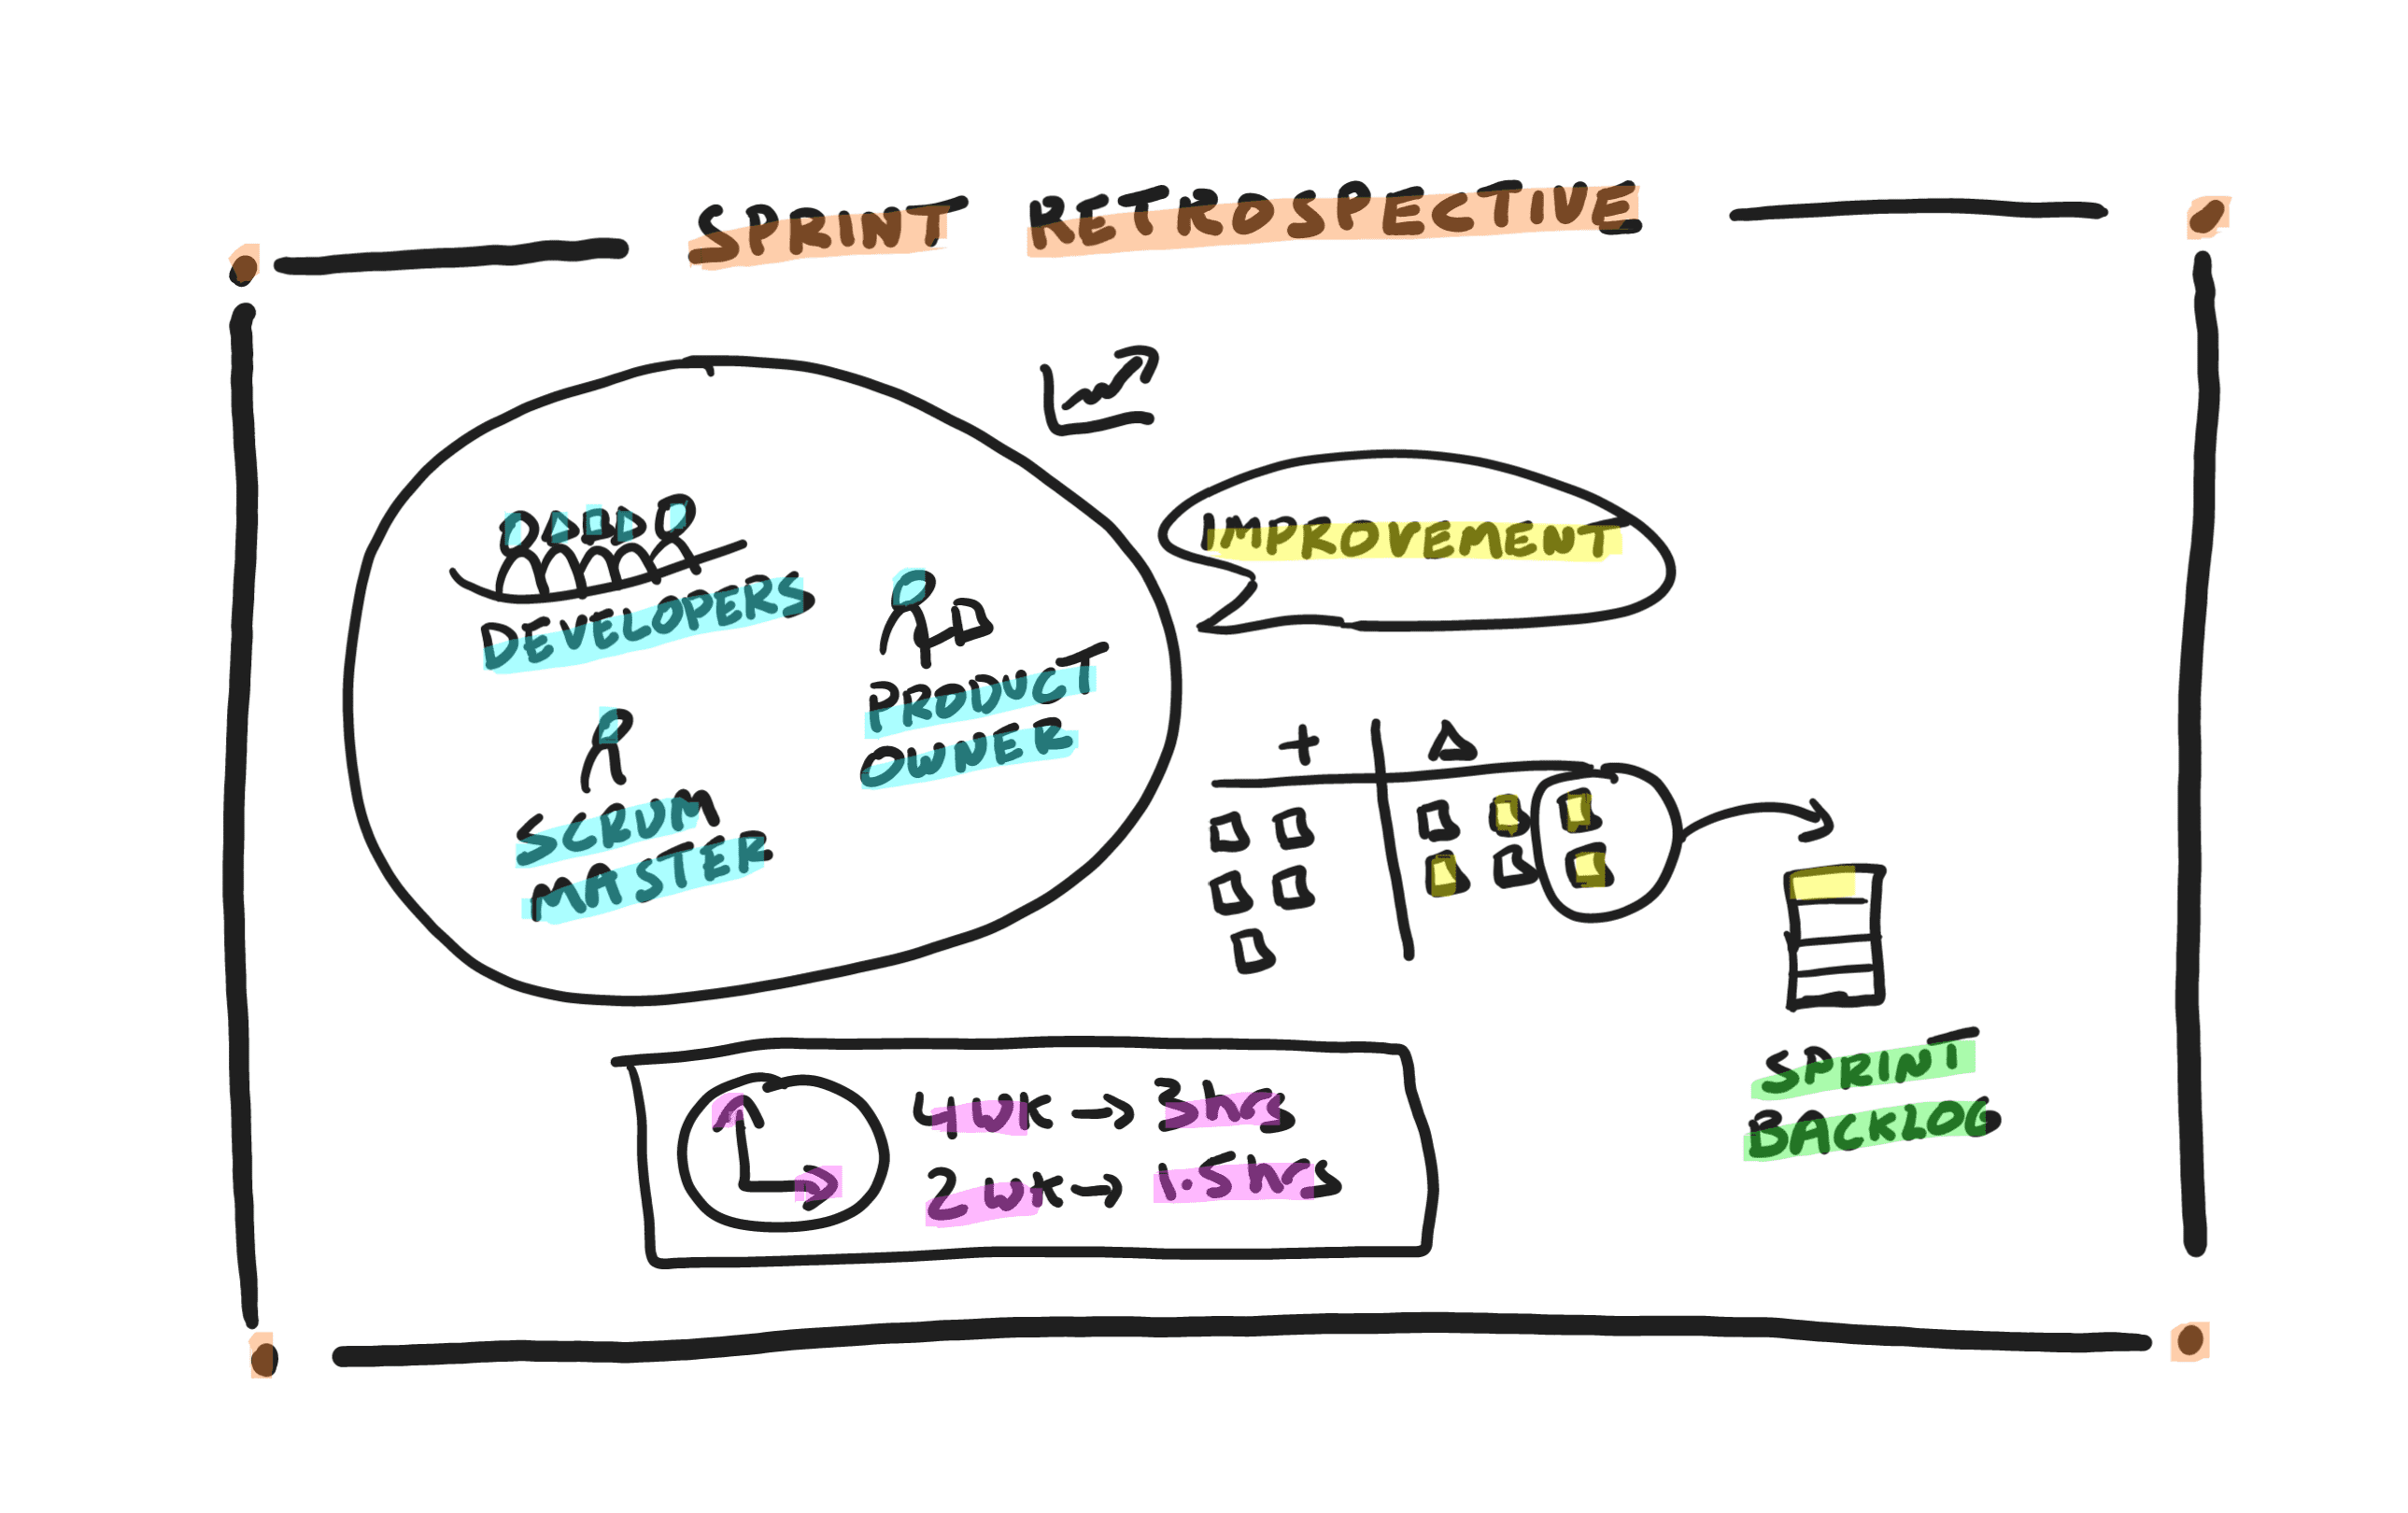 Sprint Retrospective in a Nutshell